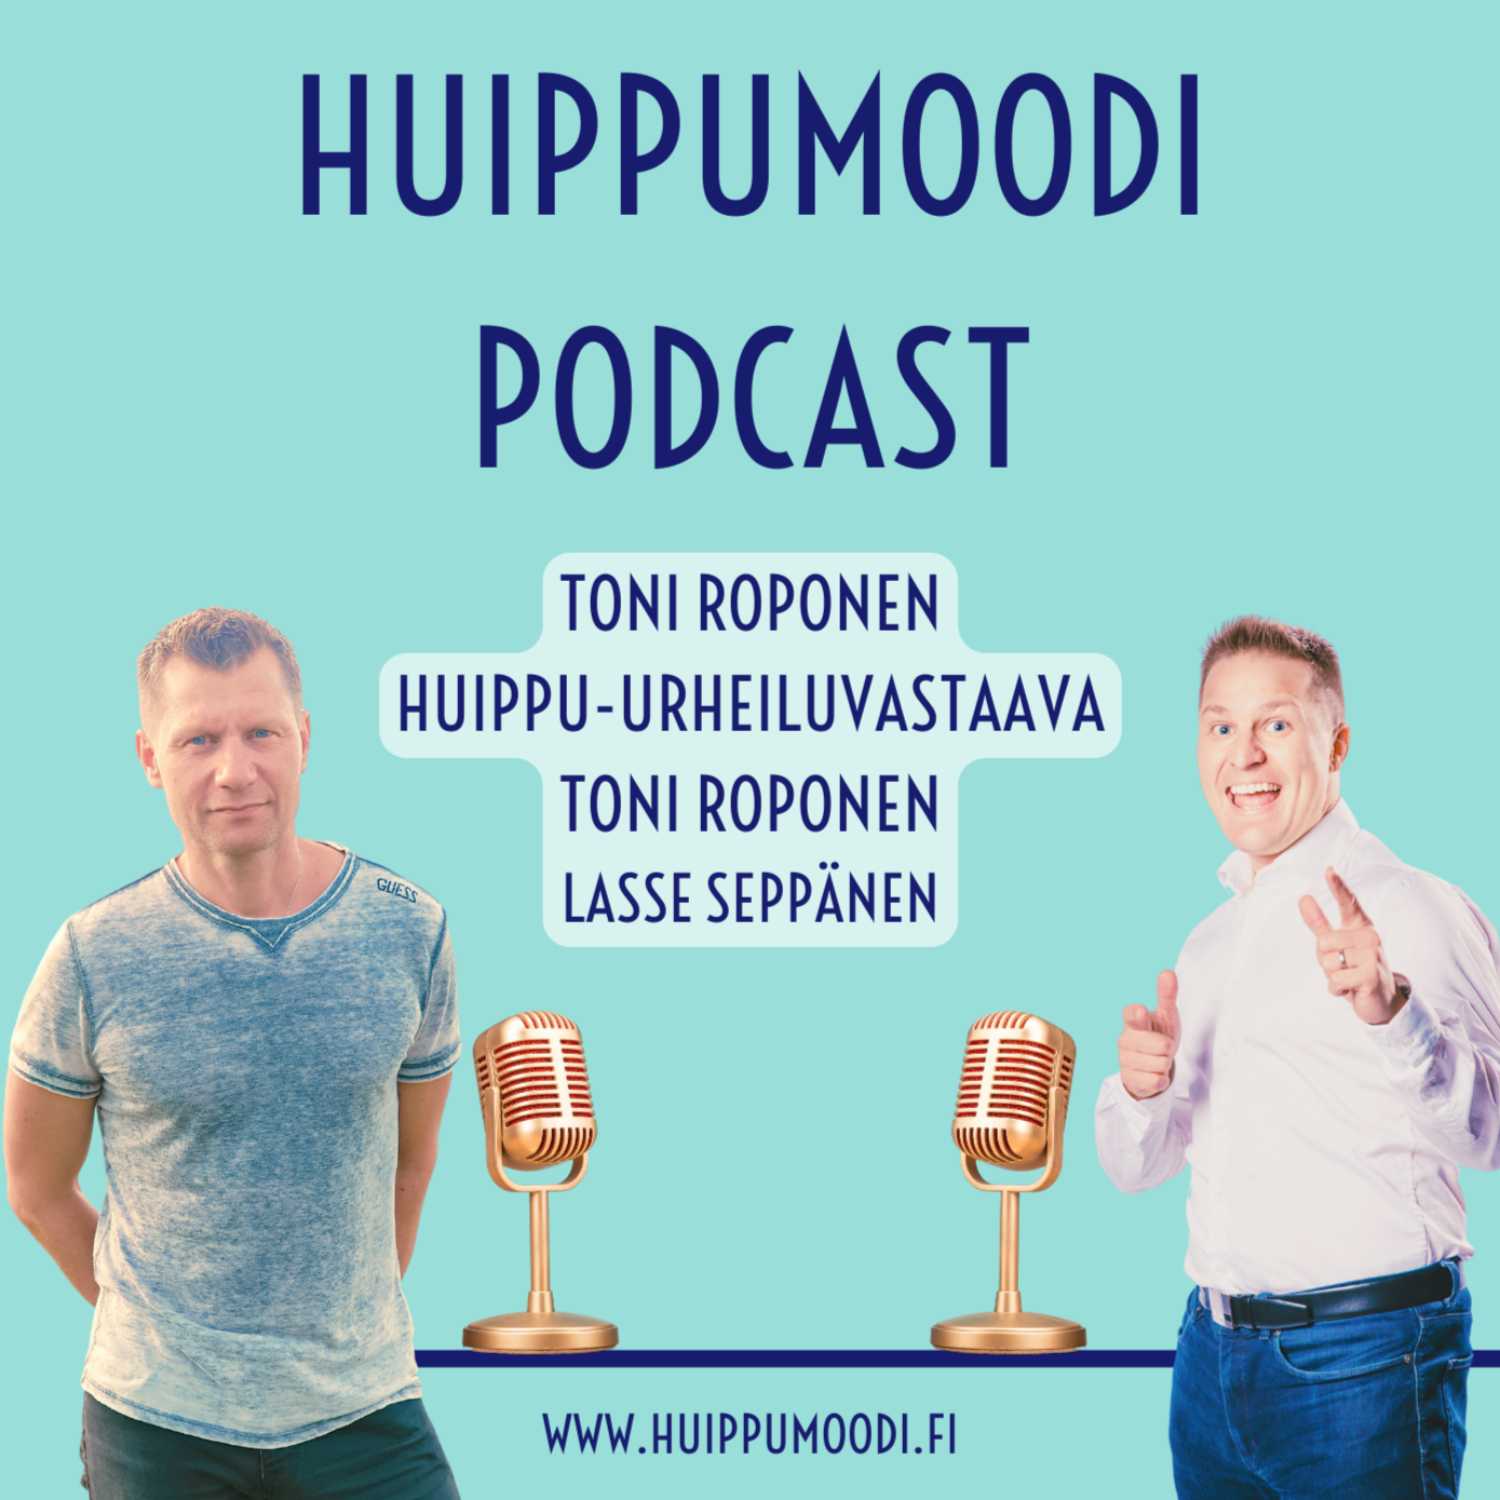 Toni Roponen, Huippu-urheiluvastaava. Suomen olympiakomitea.